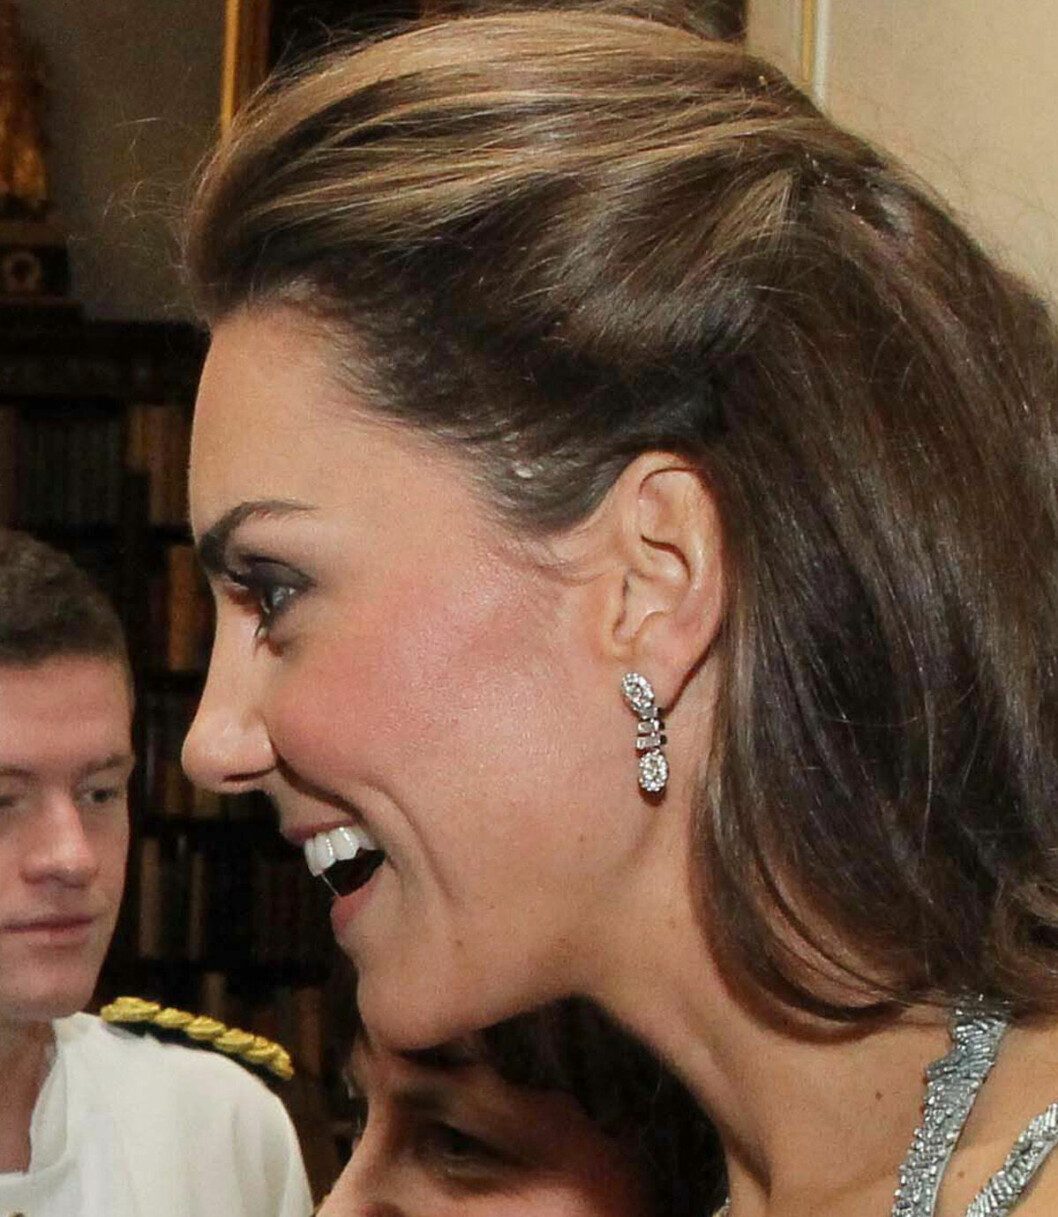 Prinsessan Kate 2011 i profil, med ett ärr på hennes huvud